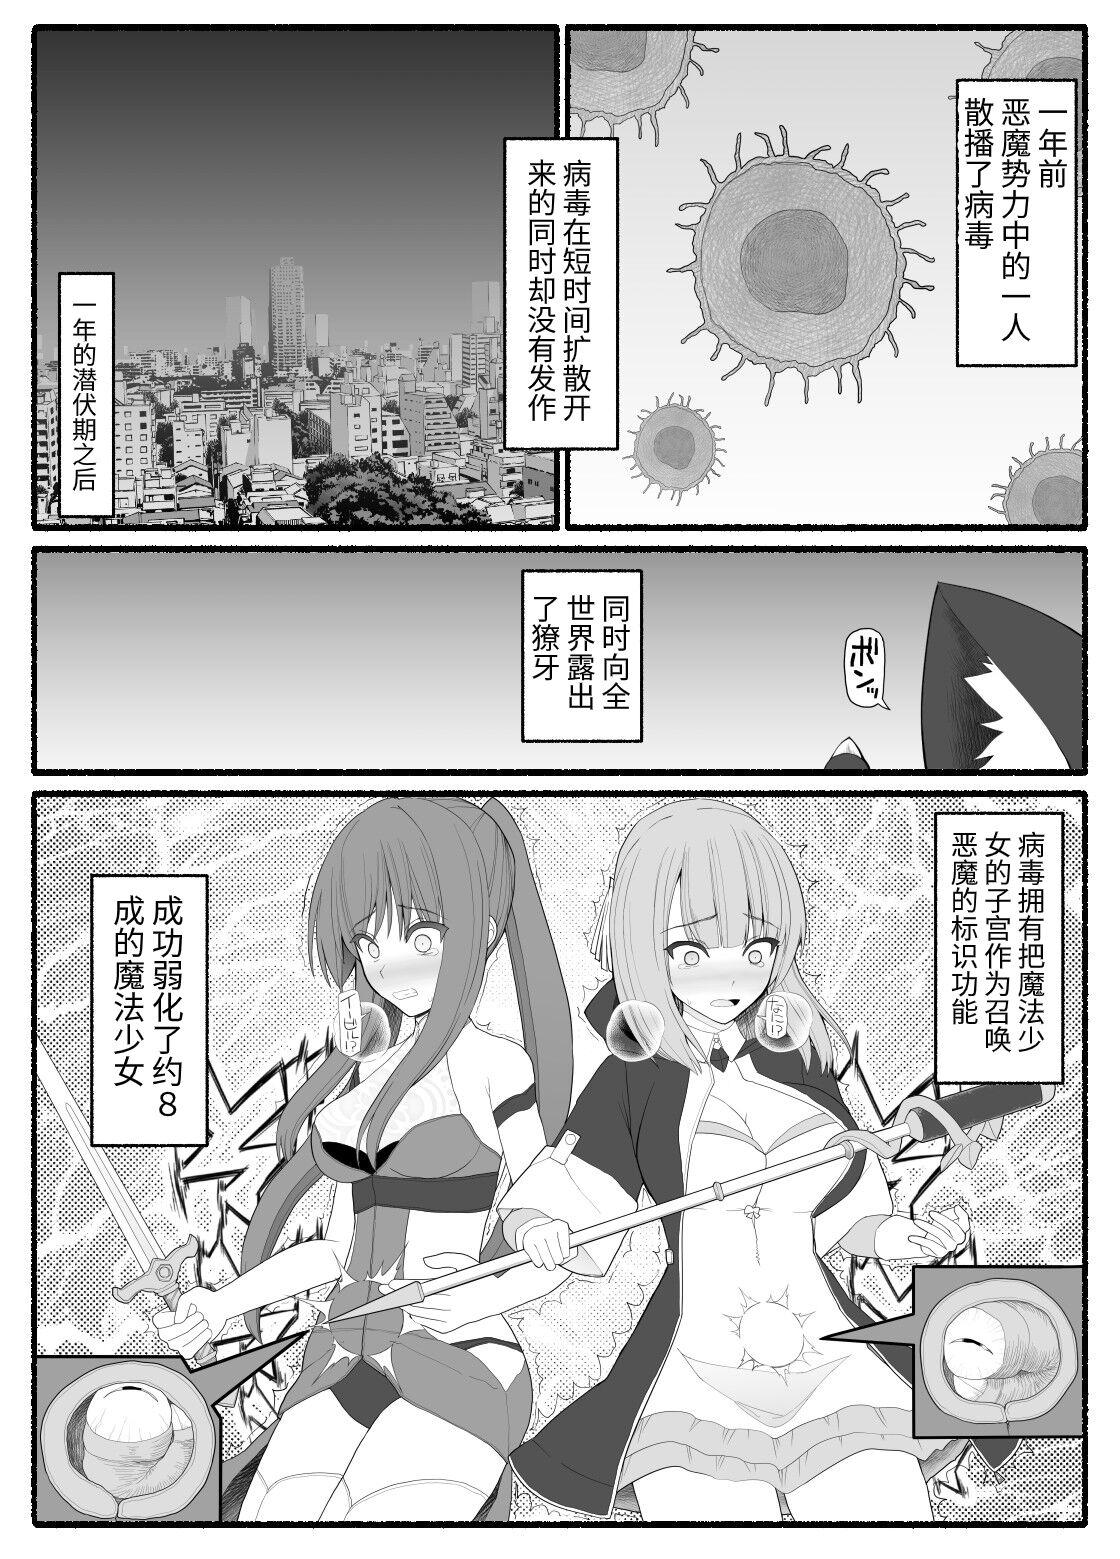 Blackmail Mahou Shoujo VS Inma Seibutsu 6 - Original Rebolando - Page 3